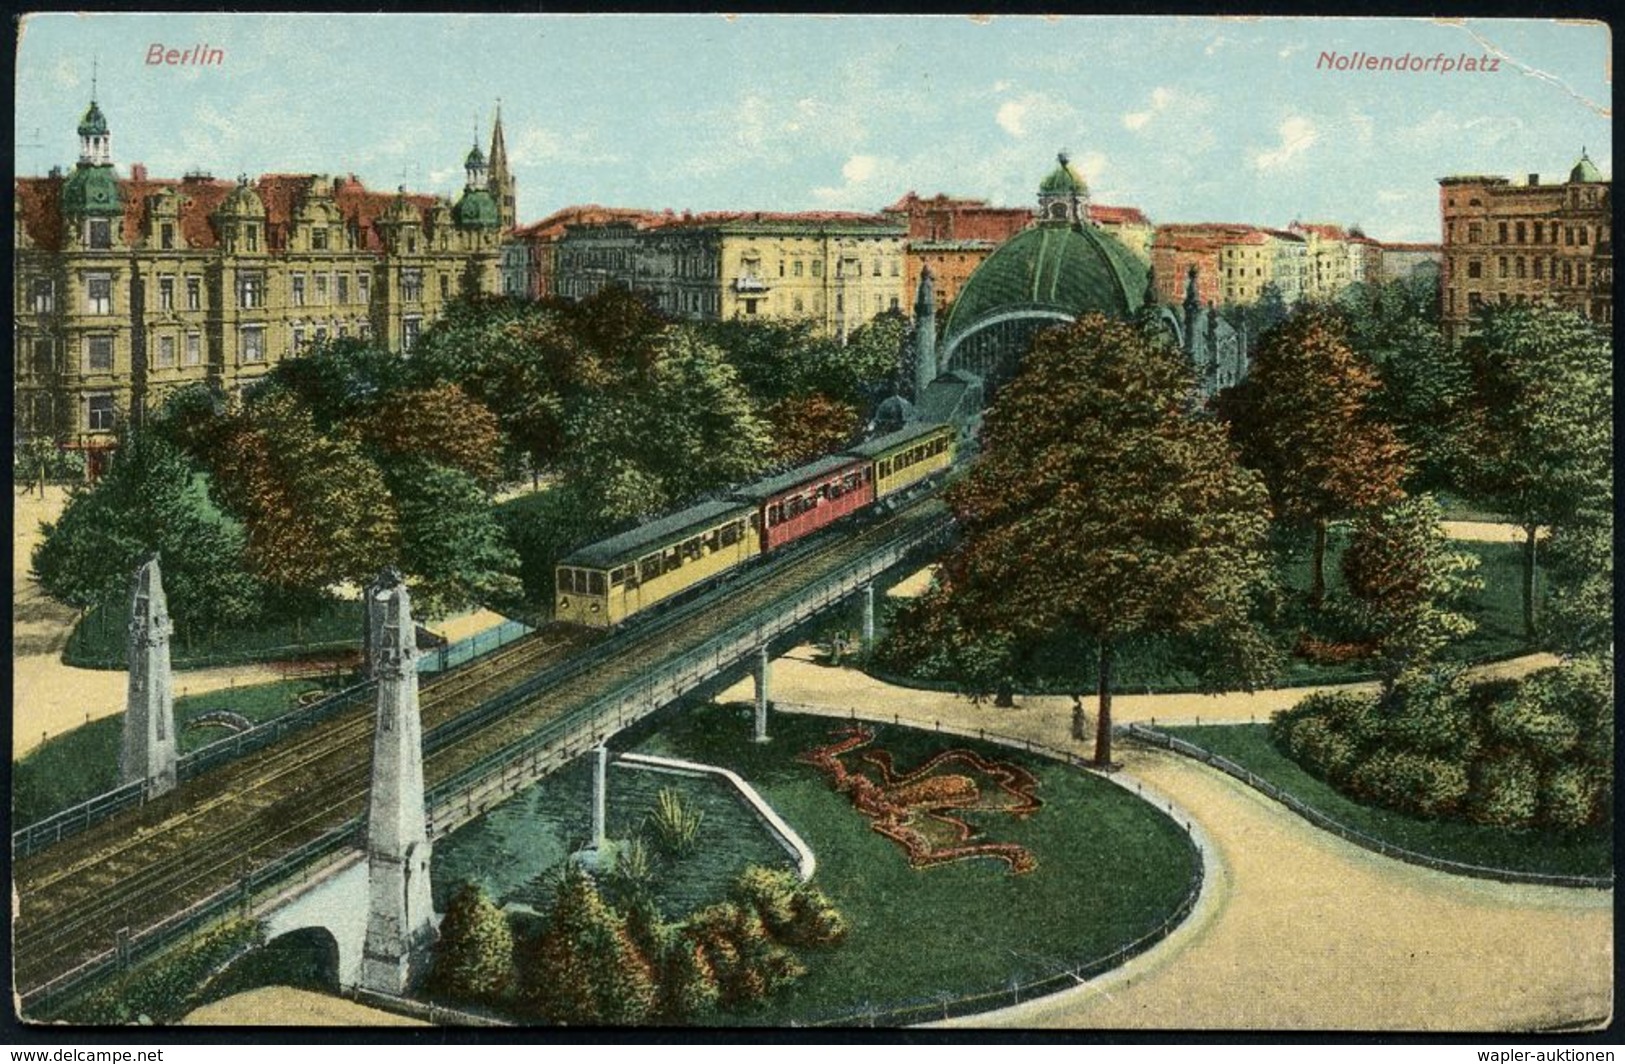 UNTERGRUNDBAHN /U-BAHN : Berlin-Schöneberg 1908/17 U-Bahnhof Nollendorfplatz, 8 Verschiedene Color-Foto-Ak., Teils Gebr. - Eisenbahnen